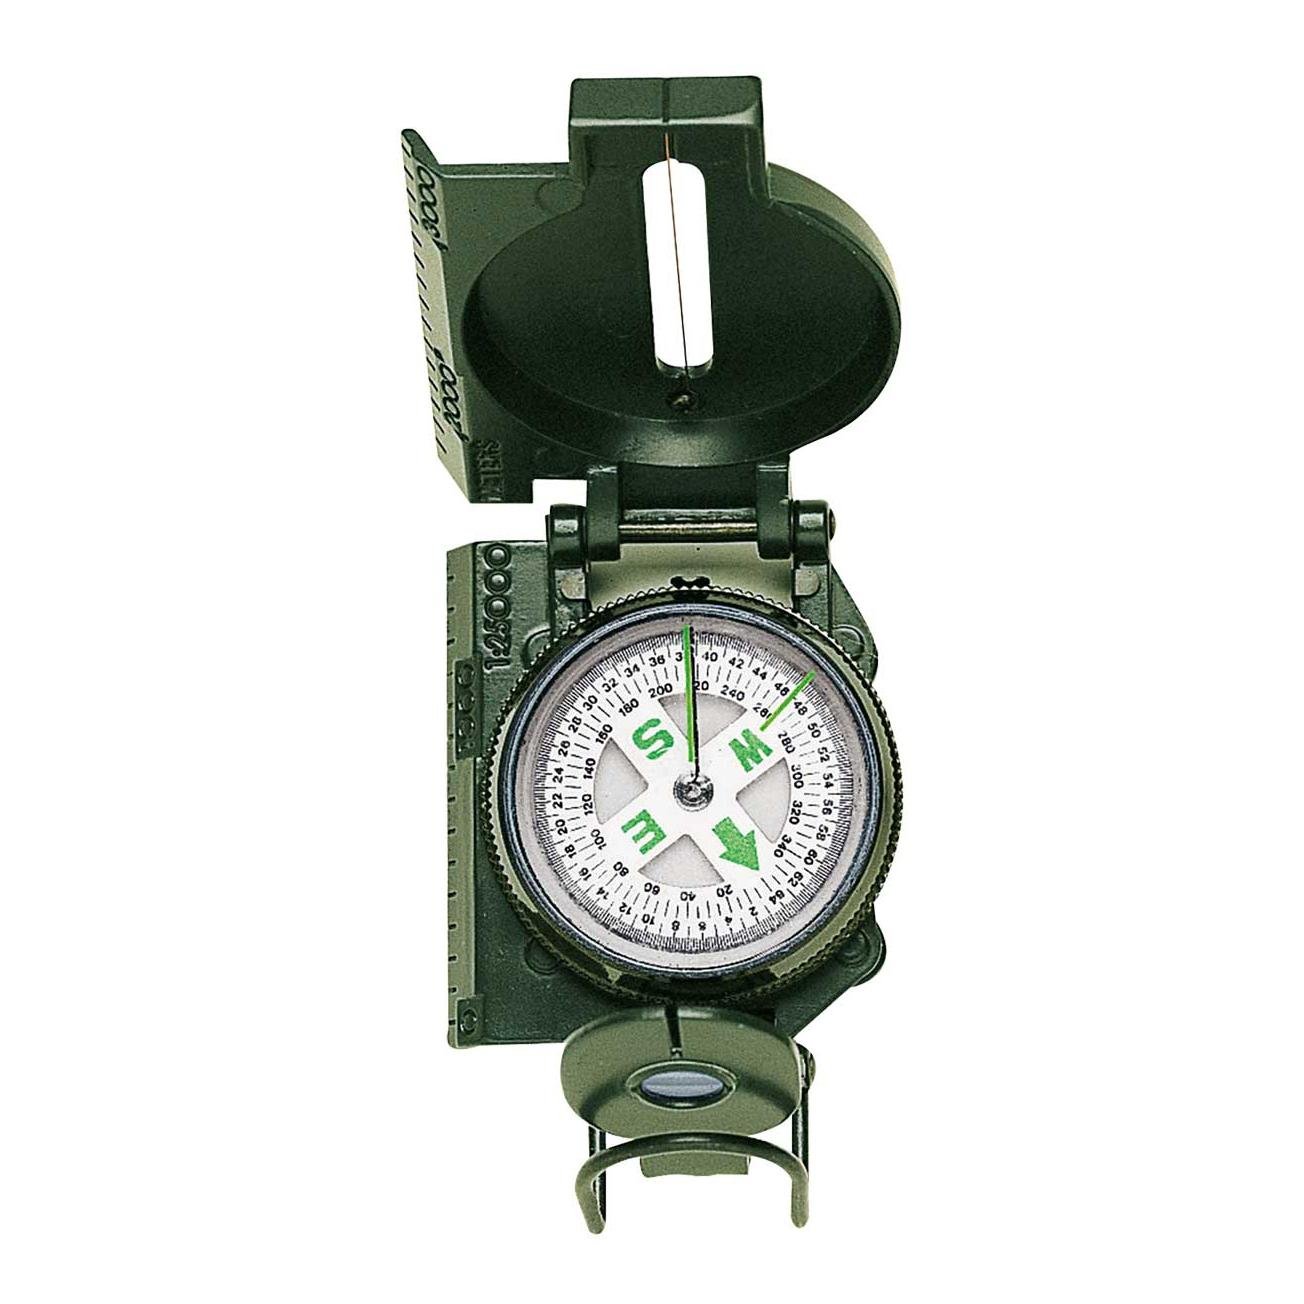 Herbertz grosser Uhrenkompass Uhr Kompass Outdoor Camping Armee BW Zusatzkompass 